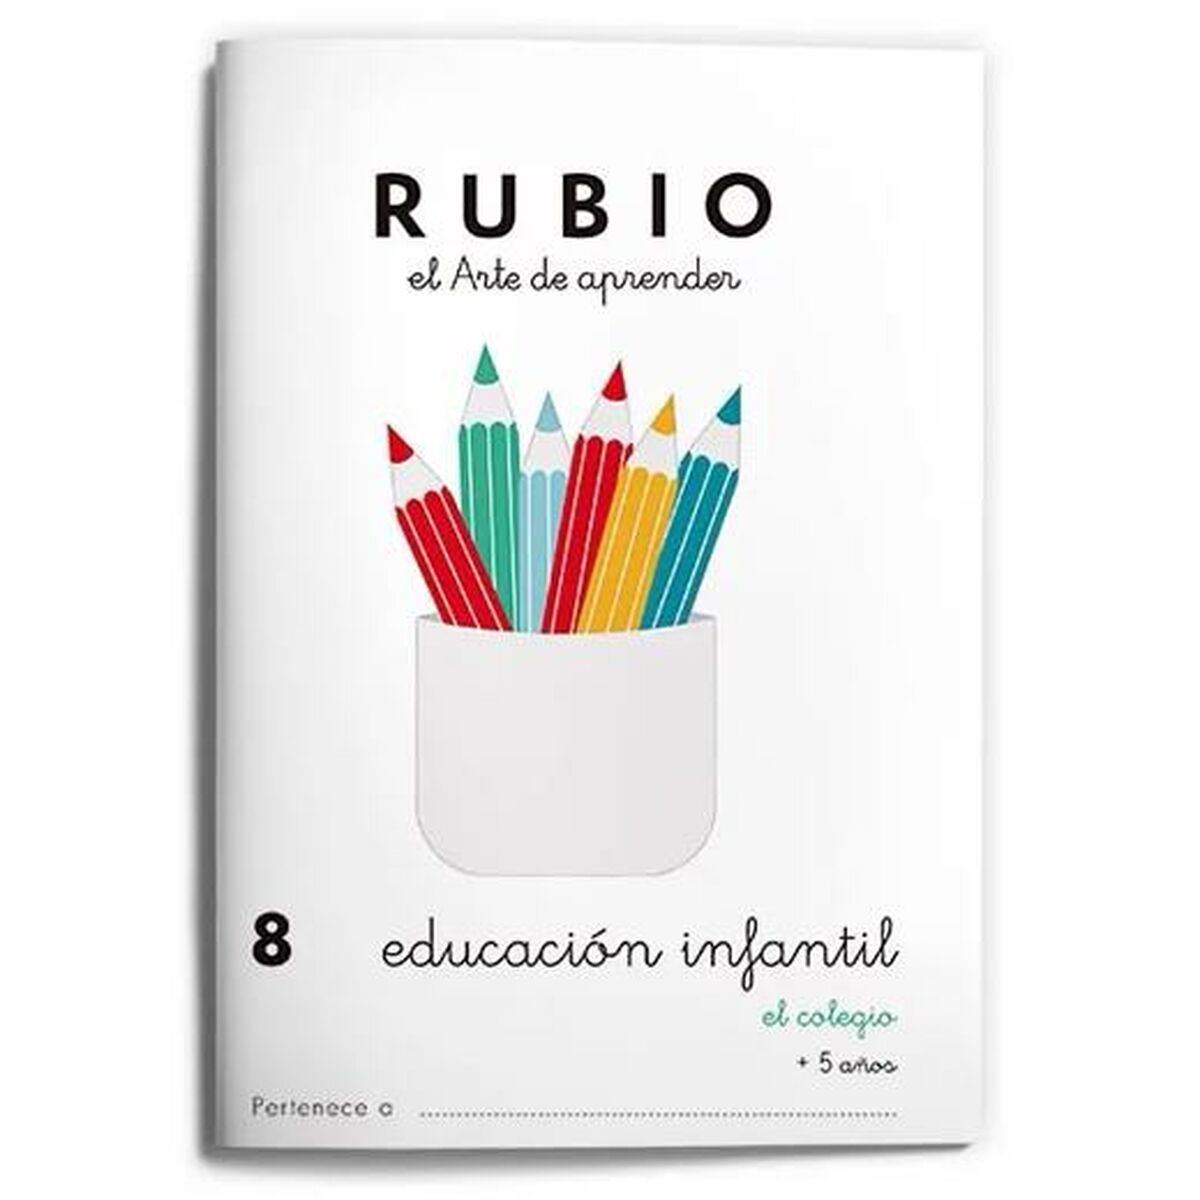 Notizbuch für die frühkindliche Bildung Rubio Nº8 A5 Spanisch (10 Stück)